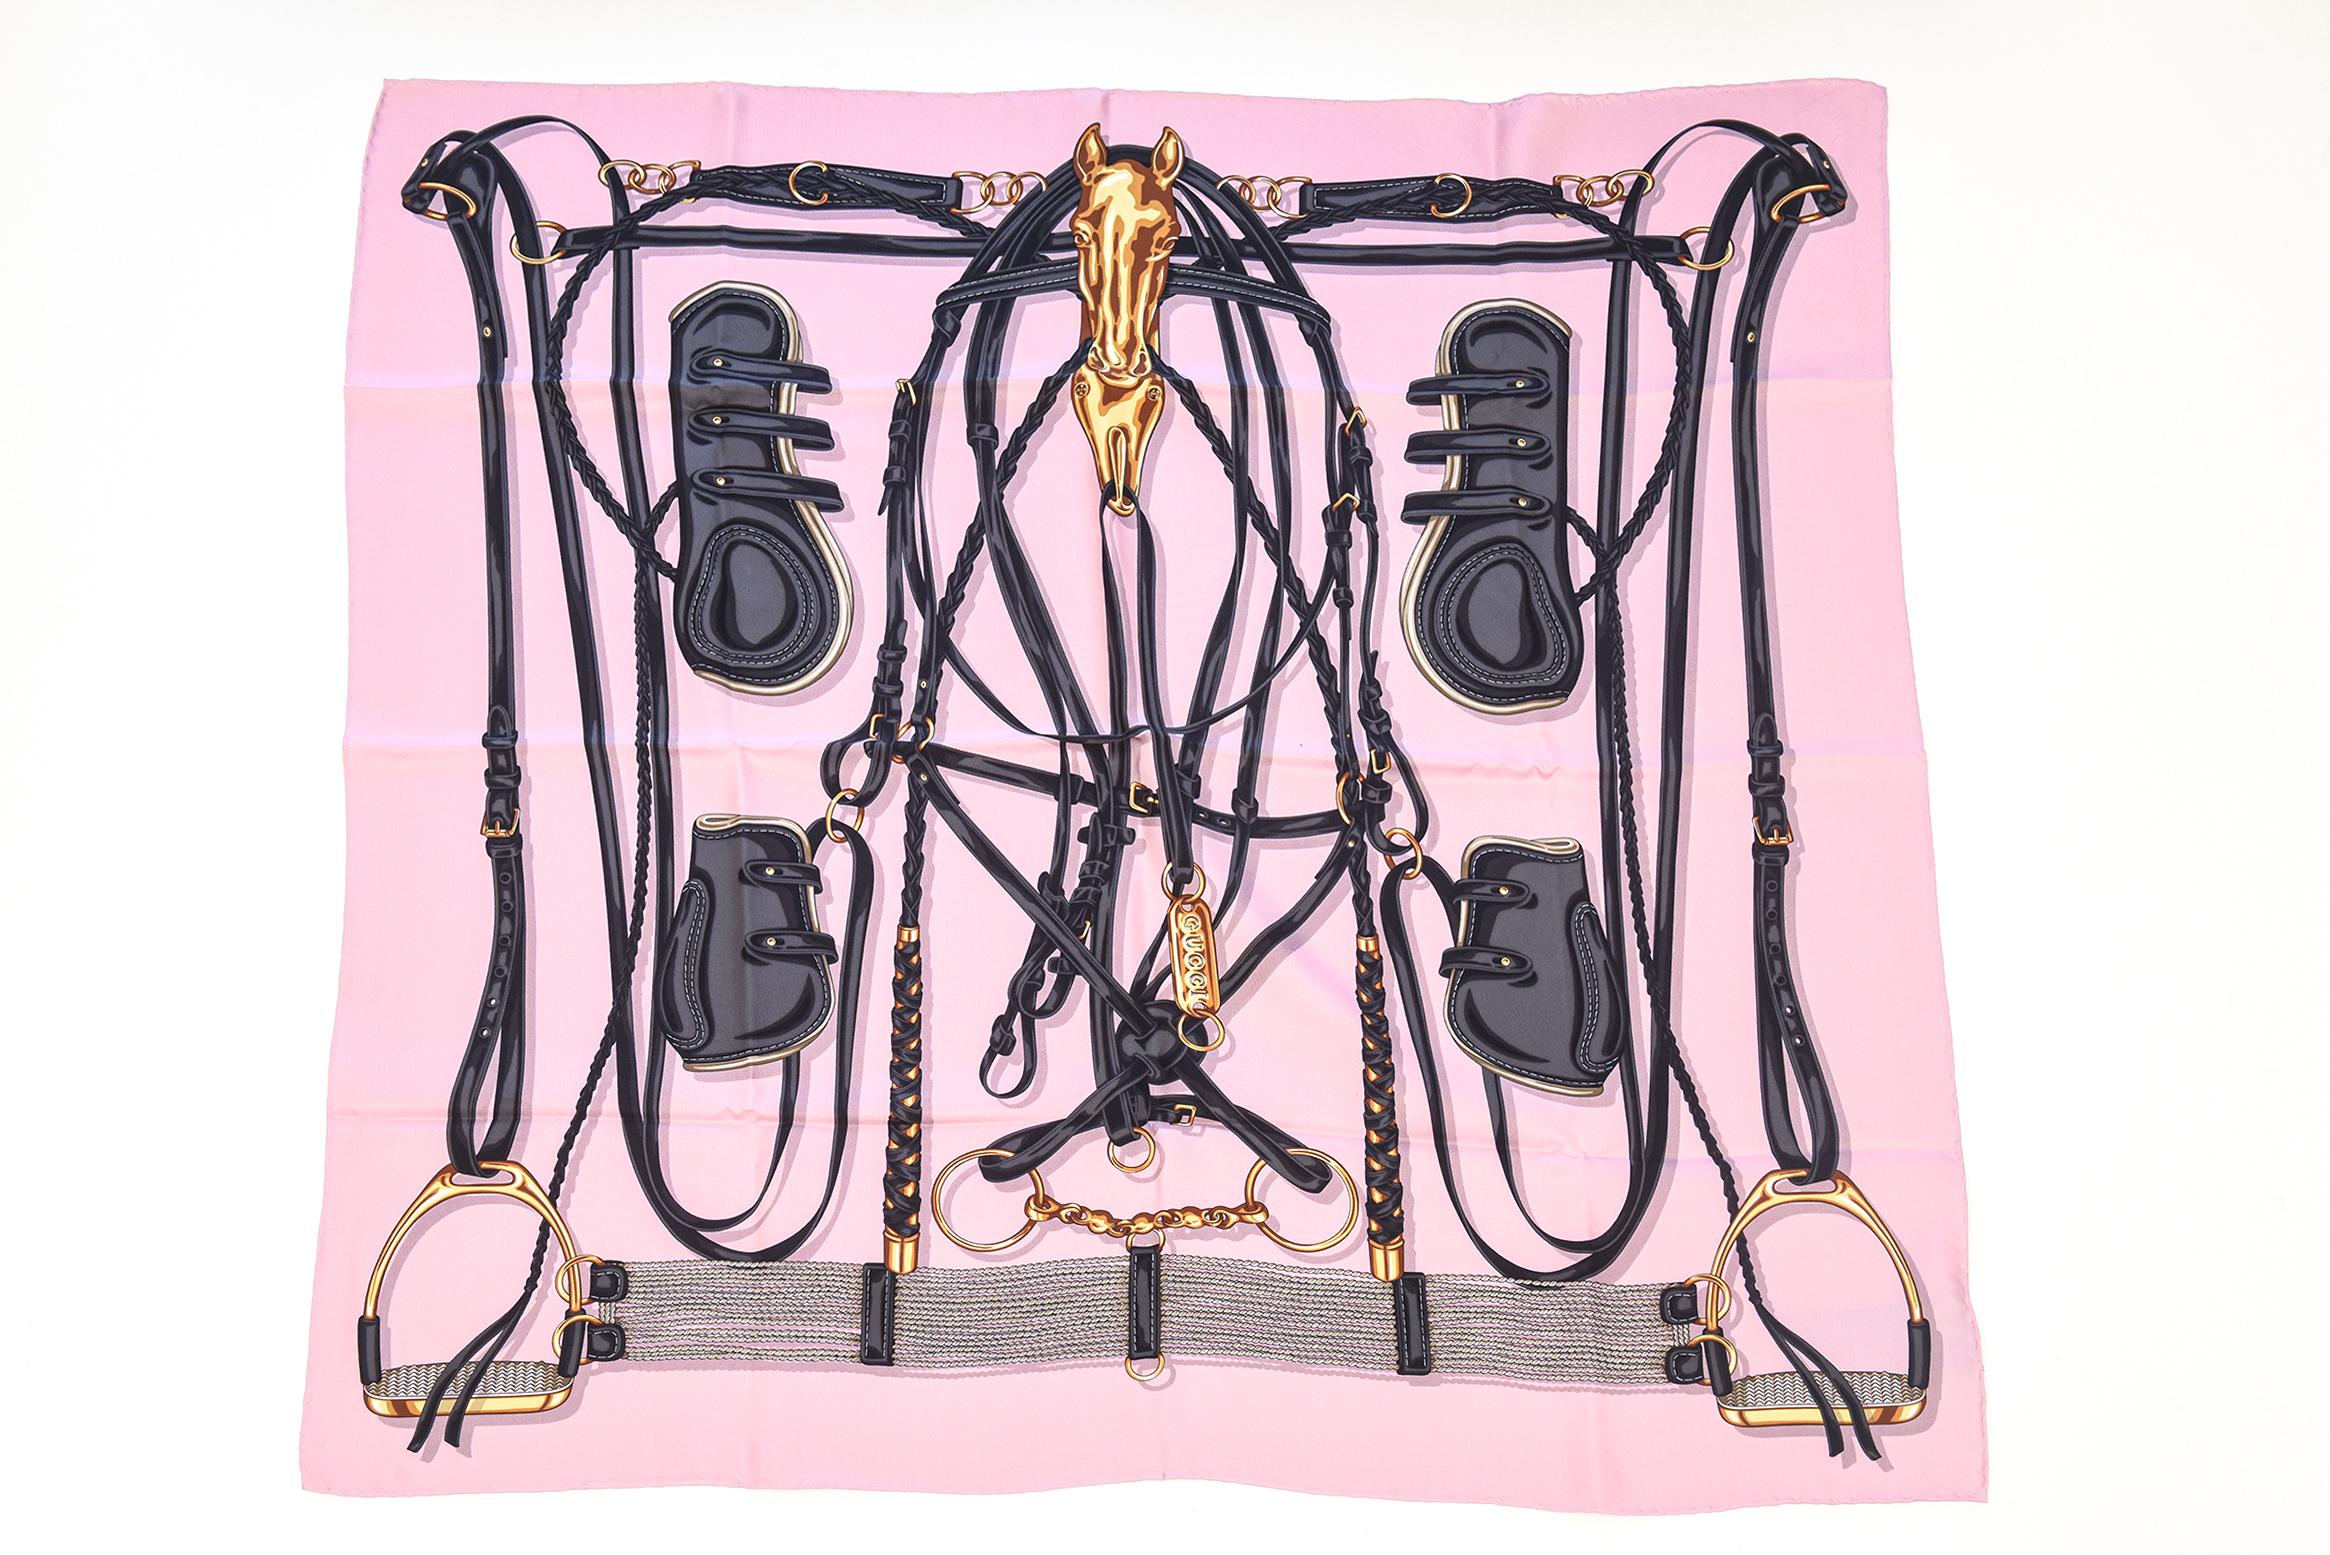 Diese atemberaubende nie verwendet italienischen unterzeichnet Gucci Seide quadratischen Schal hat schöne Farben von hellen rosa, schwarz, anthrazit und gold. Es hat das Motiv des Pferdegebisses und wird in der Originalverpackung geliefert. Ab 2015.